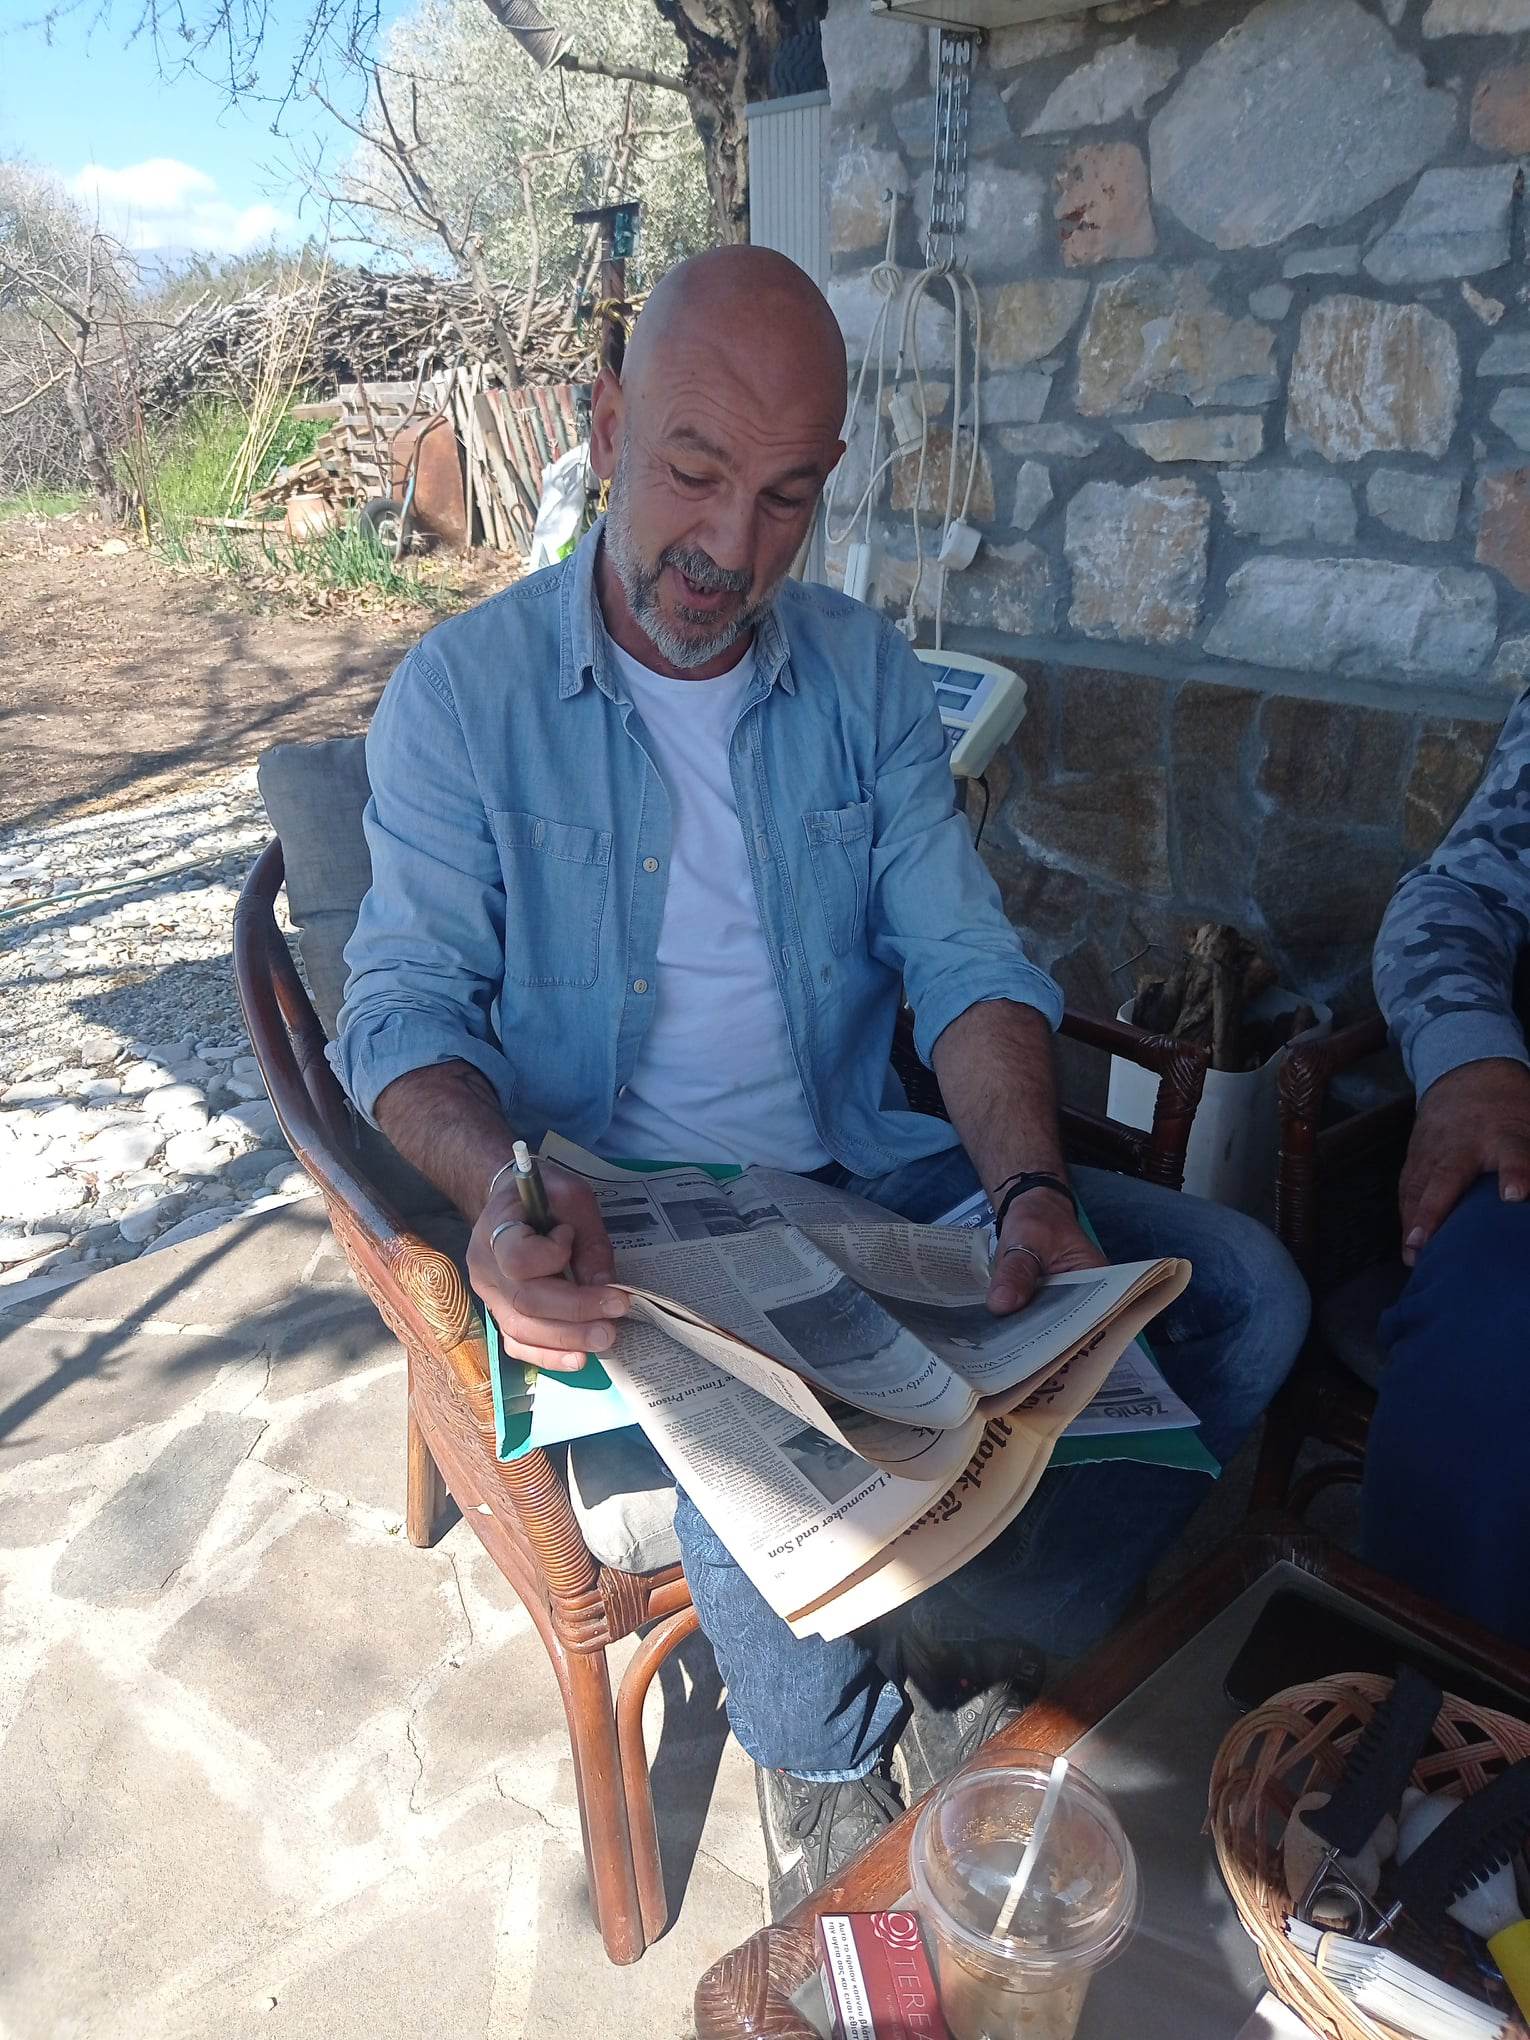 Συνέντευξη με έναν πρωτοπόρο Αγρότη από το Φωτολίβος Δράμας : «Πρέπει όλοι μαζί να βρούμε λύσεις για να μπορέσει ο κόσμος να παραμείνει στα χωριά και να παράγει…»